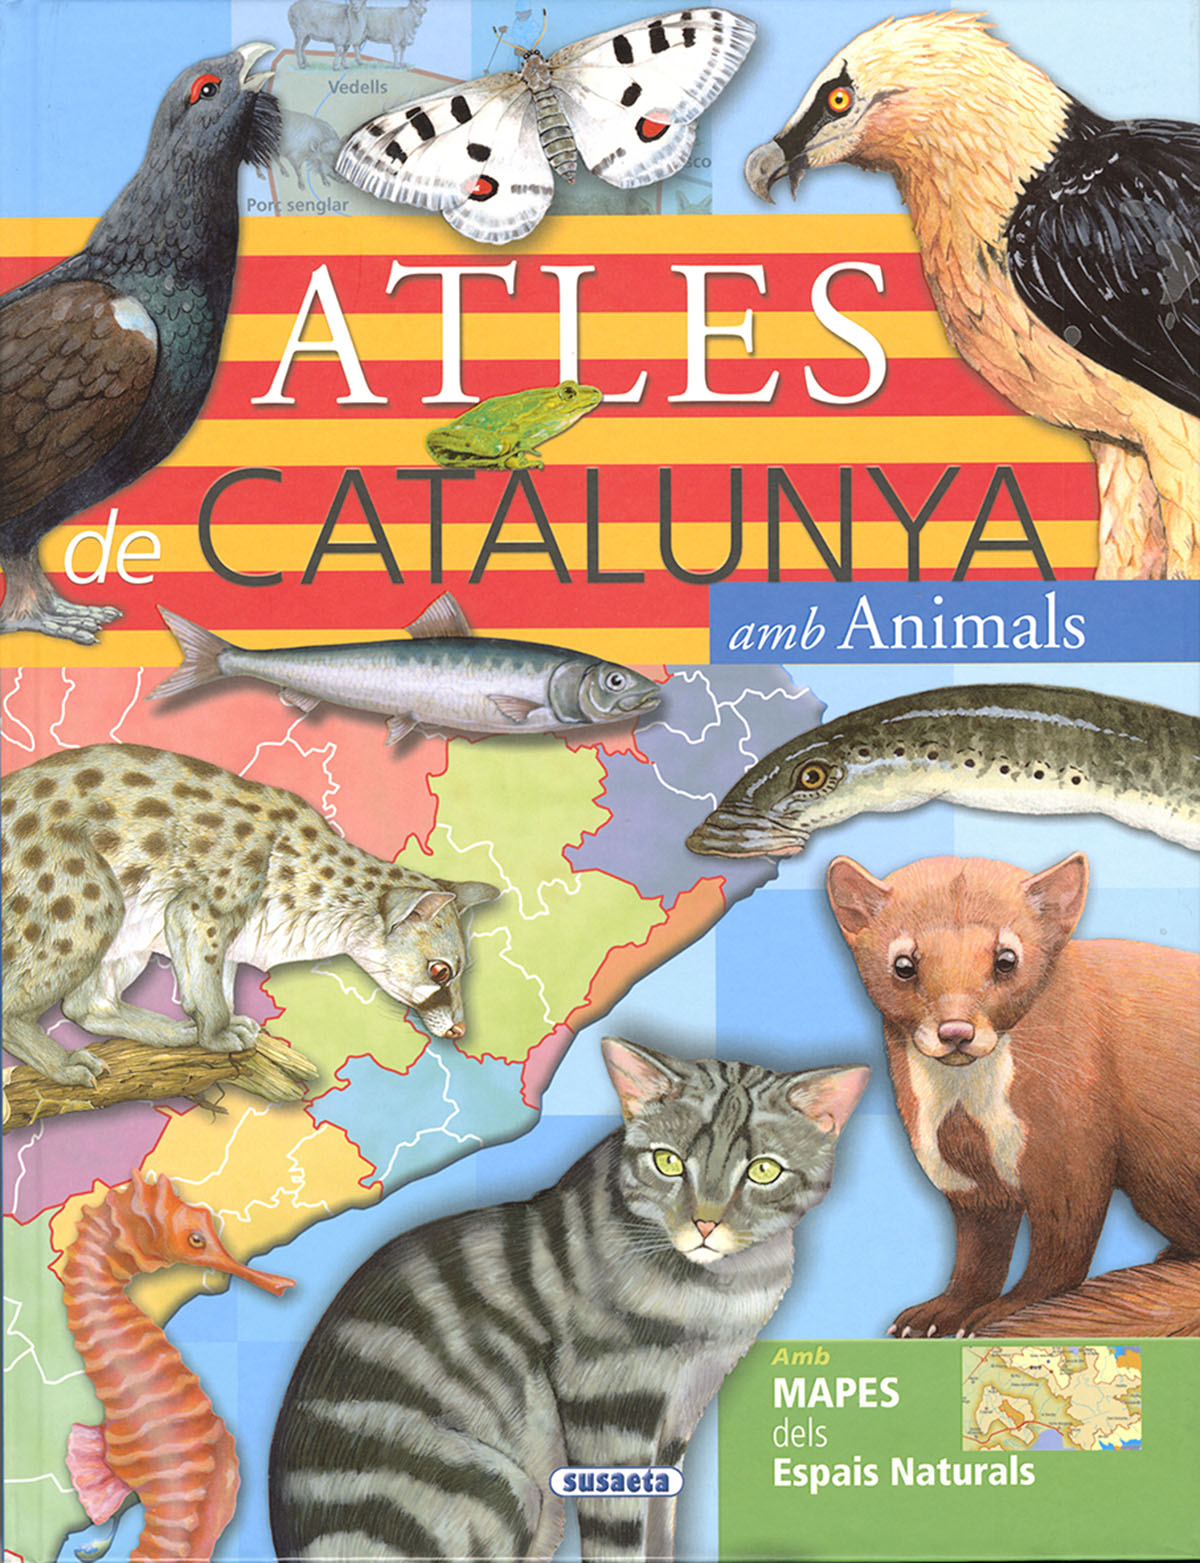 Atles de Catalunya amb animals